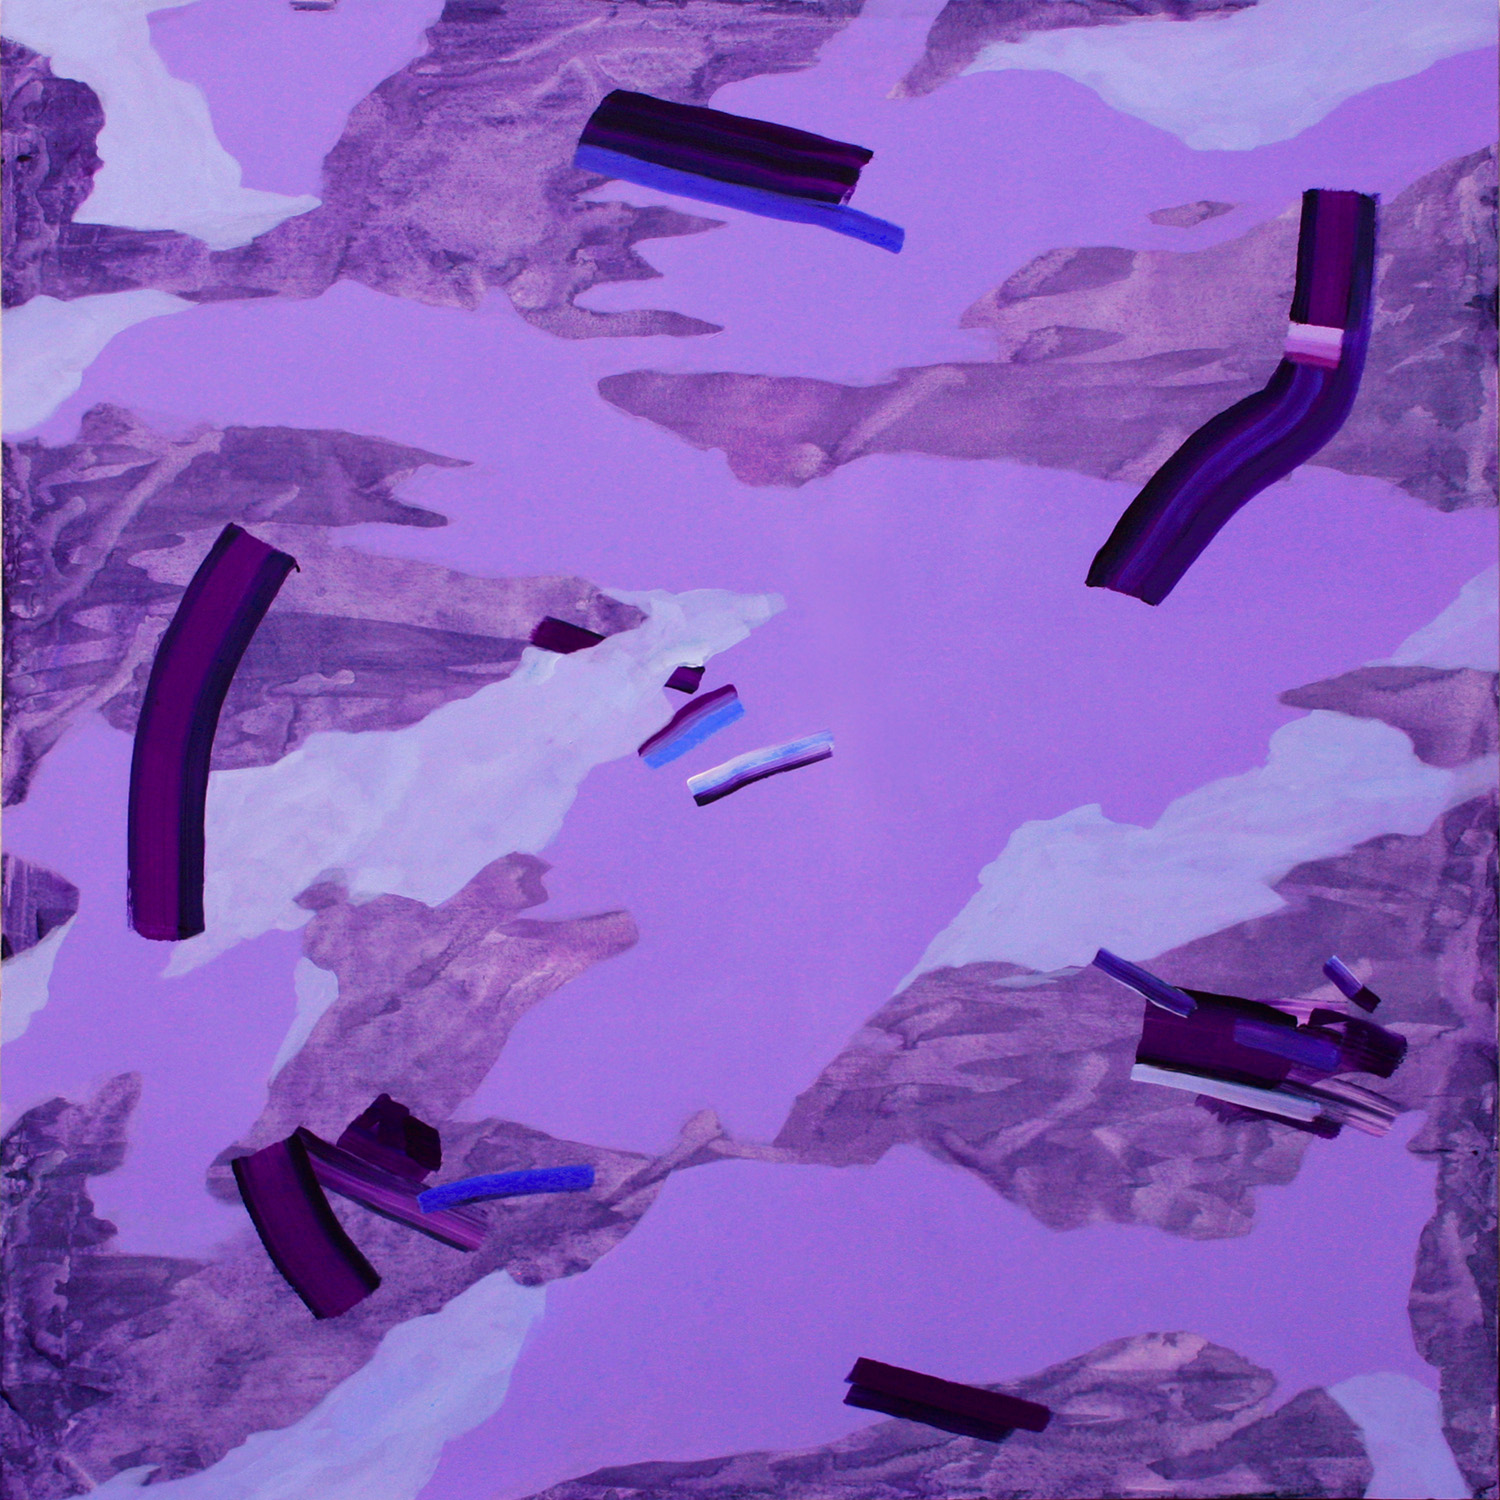 Isabella Nazzarri, Gli elementi si rincorrono, 2018, acrilico su tela, 150 x 150 cm, courtesy l'artista